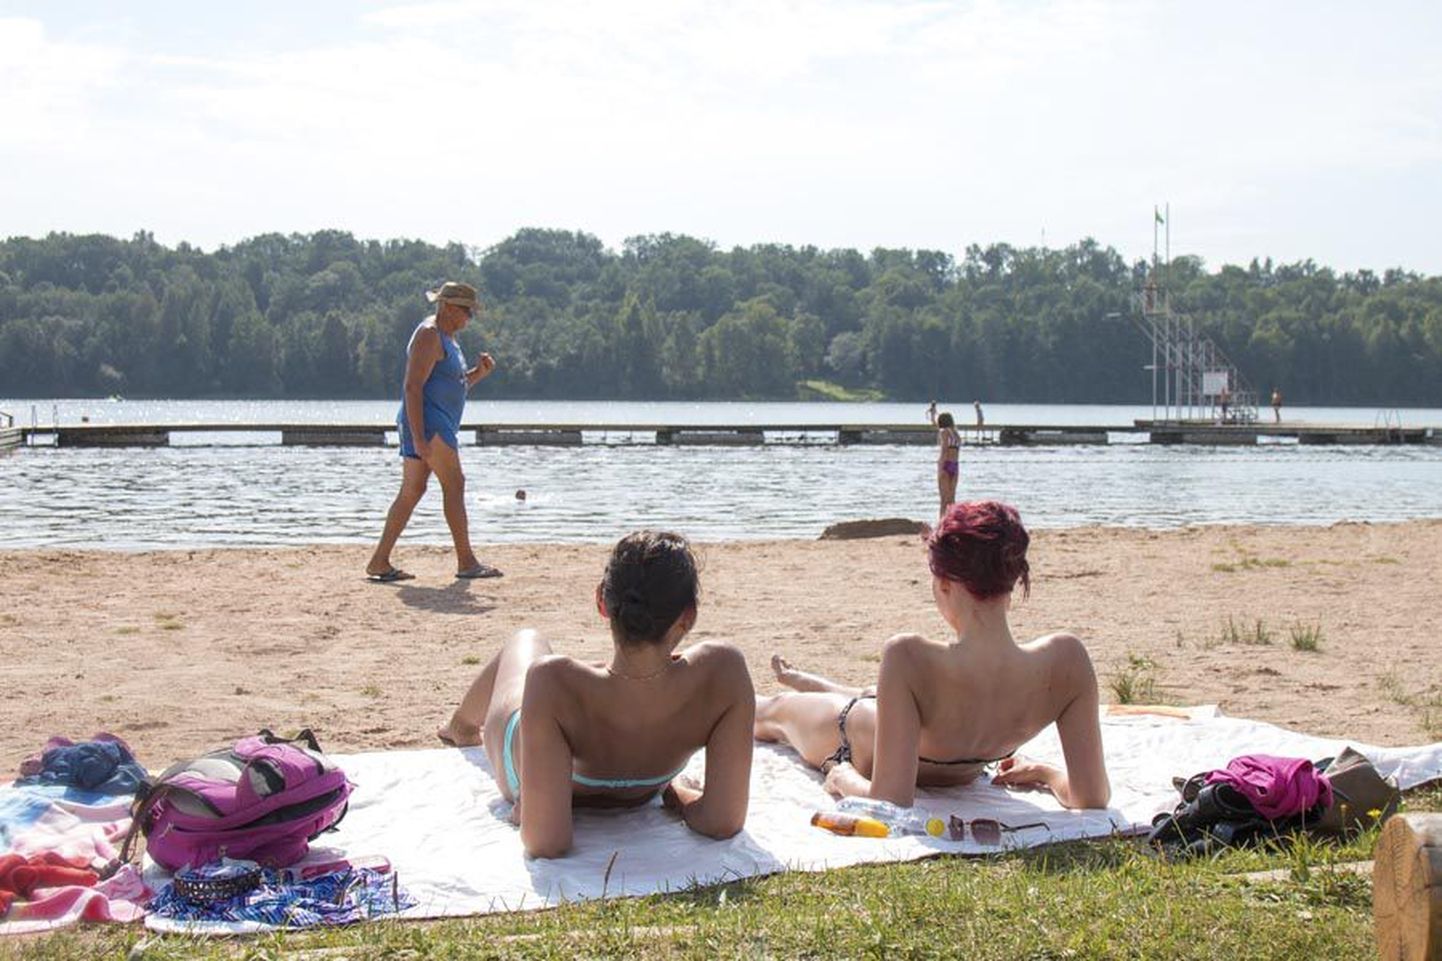 Selle nädala kõige soojemat ilma oli eile lõunaks Viljandi randa nautima tulnud rohkem kui poolsada inimest. Kui täiskasvanud peesitasid päikese käes, siis lapsed sulistasid vees. Paadilaenutajal polnud aga ühtki kundet.